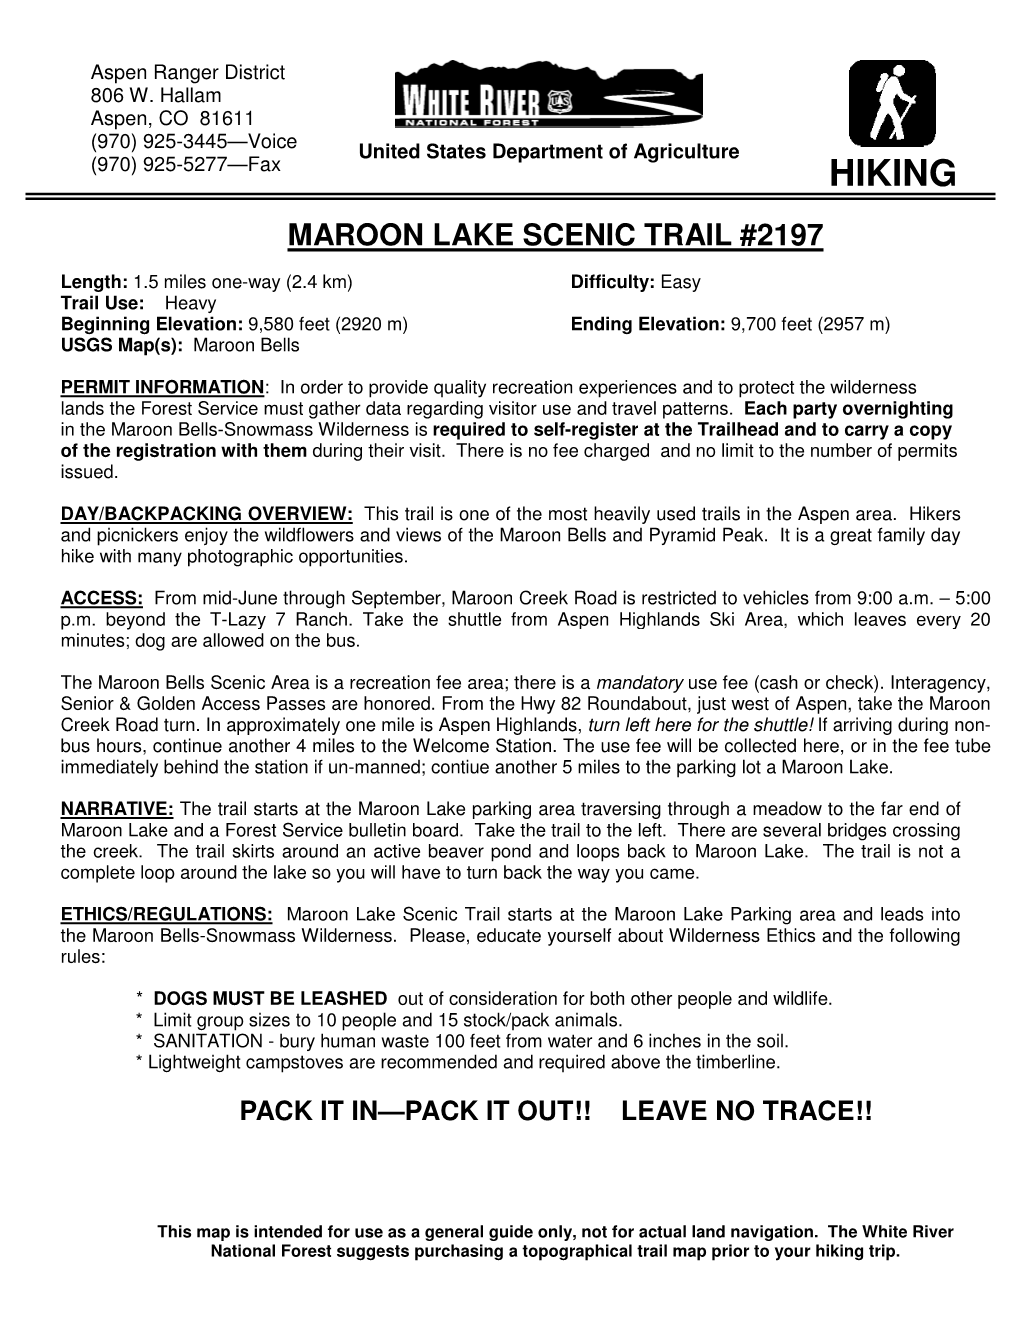 Maroon Lake Scenic Trail #2197